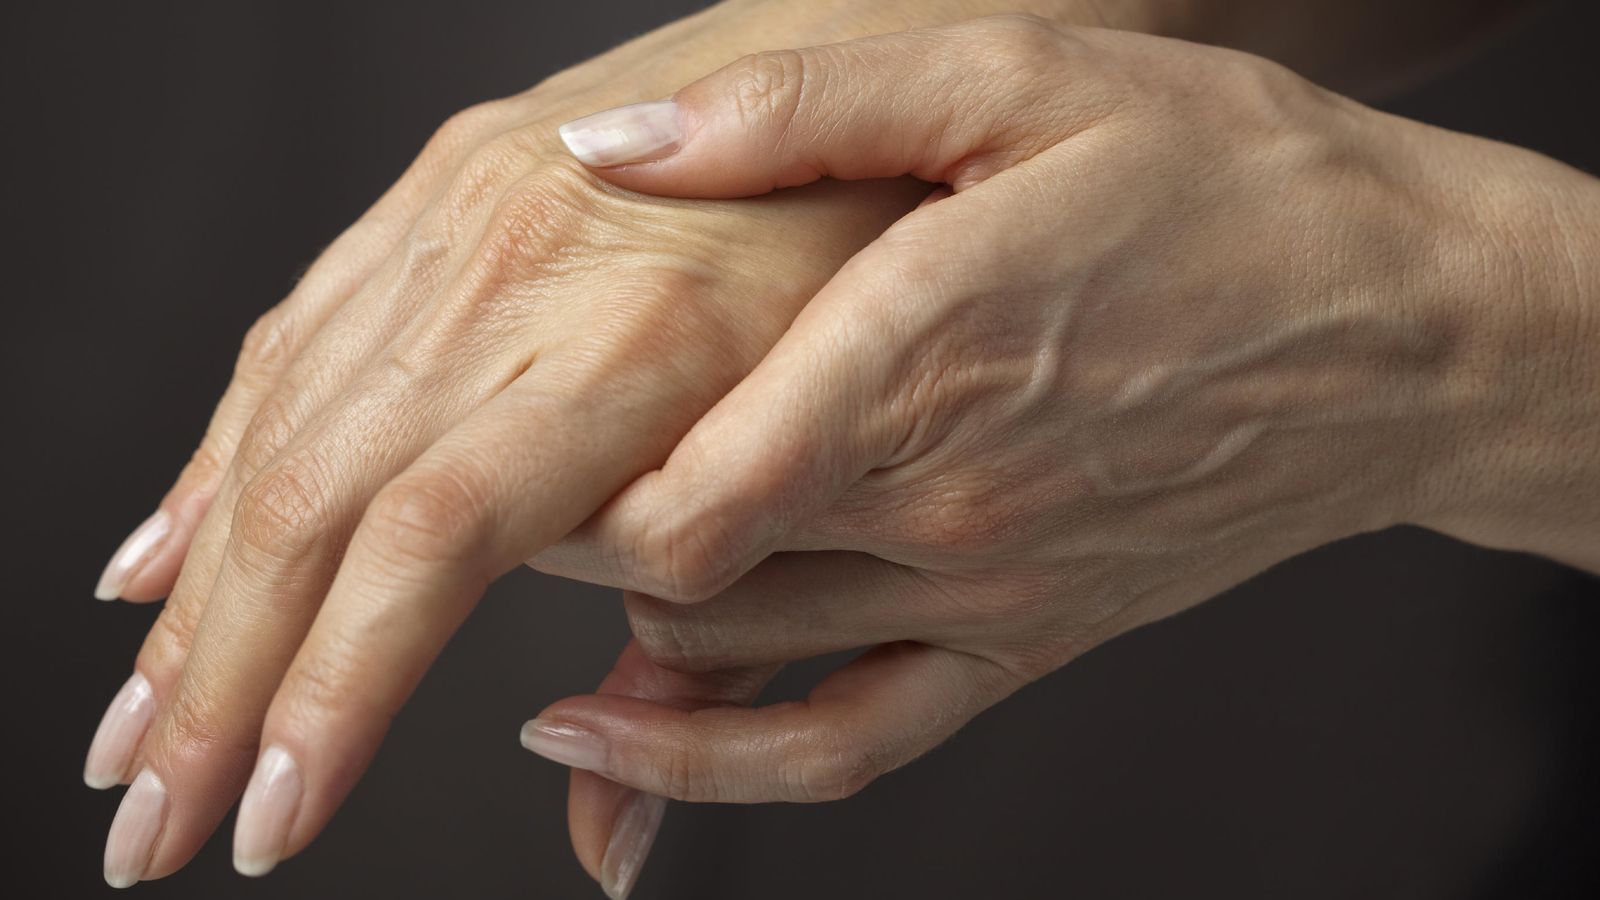 Foto: La artrosis es una enfermedad degenerativa causada por el deterioro del cartílago articular. (iStock)